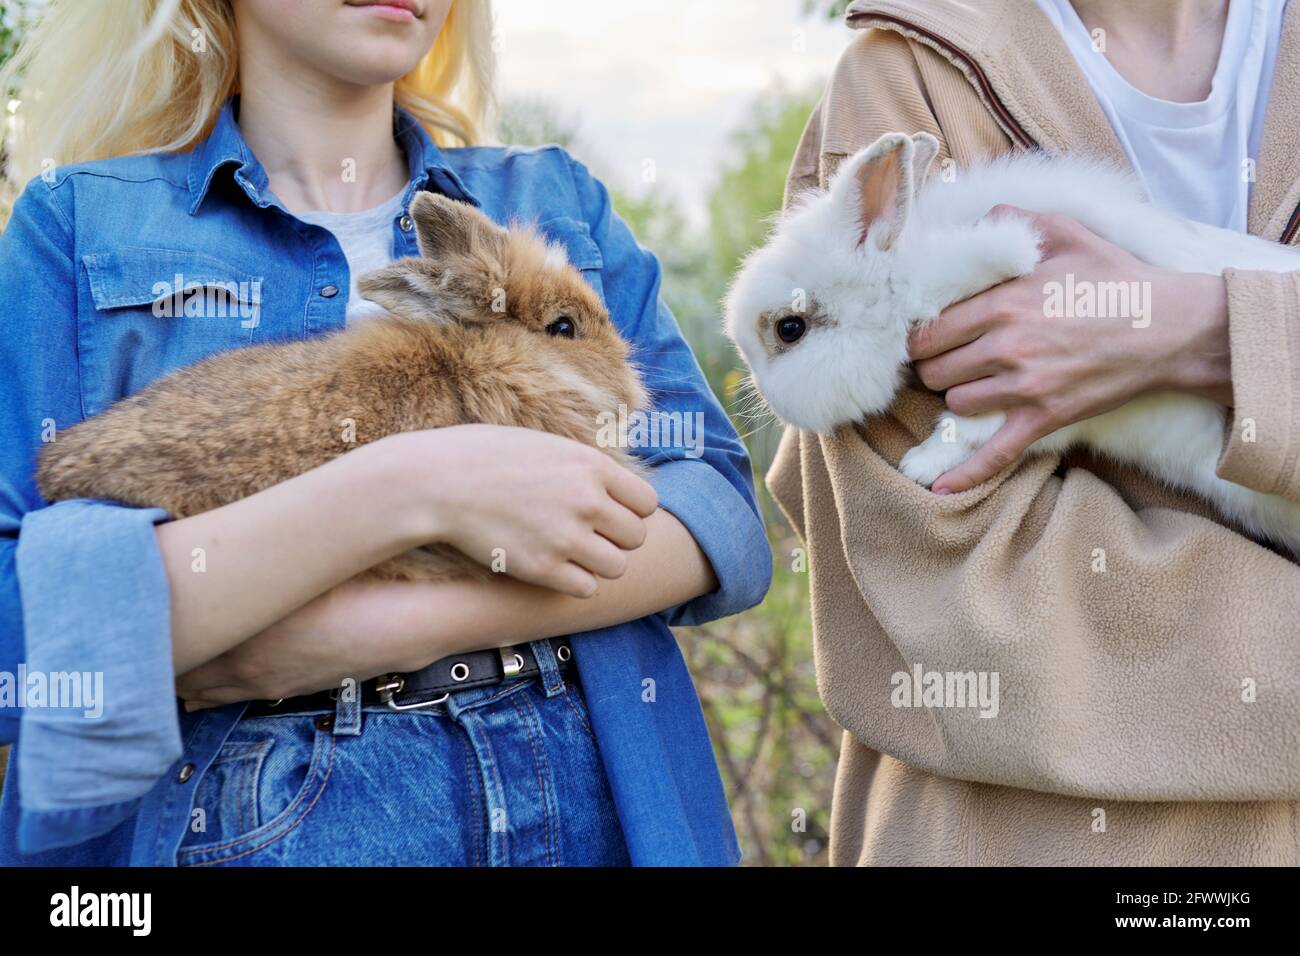 Jugendliche mit Kaninchen in den Händen, Haustiere ein paar dekorative  Kaninchen Stockfotografie - Alamy